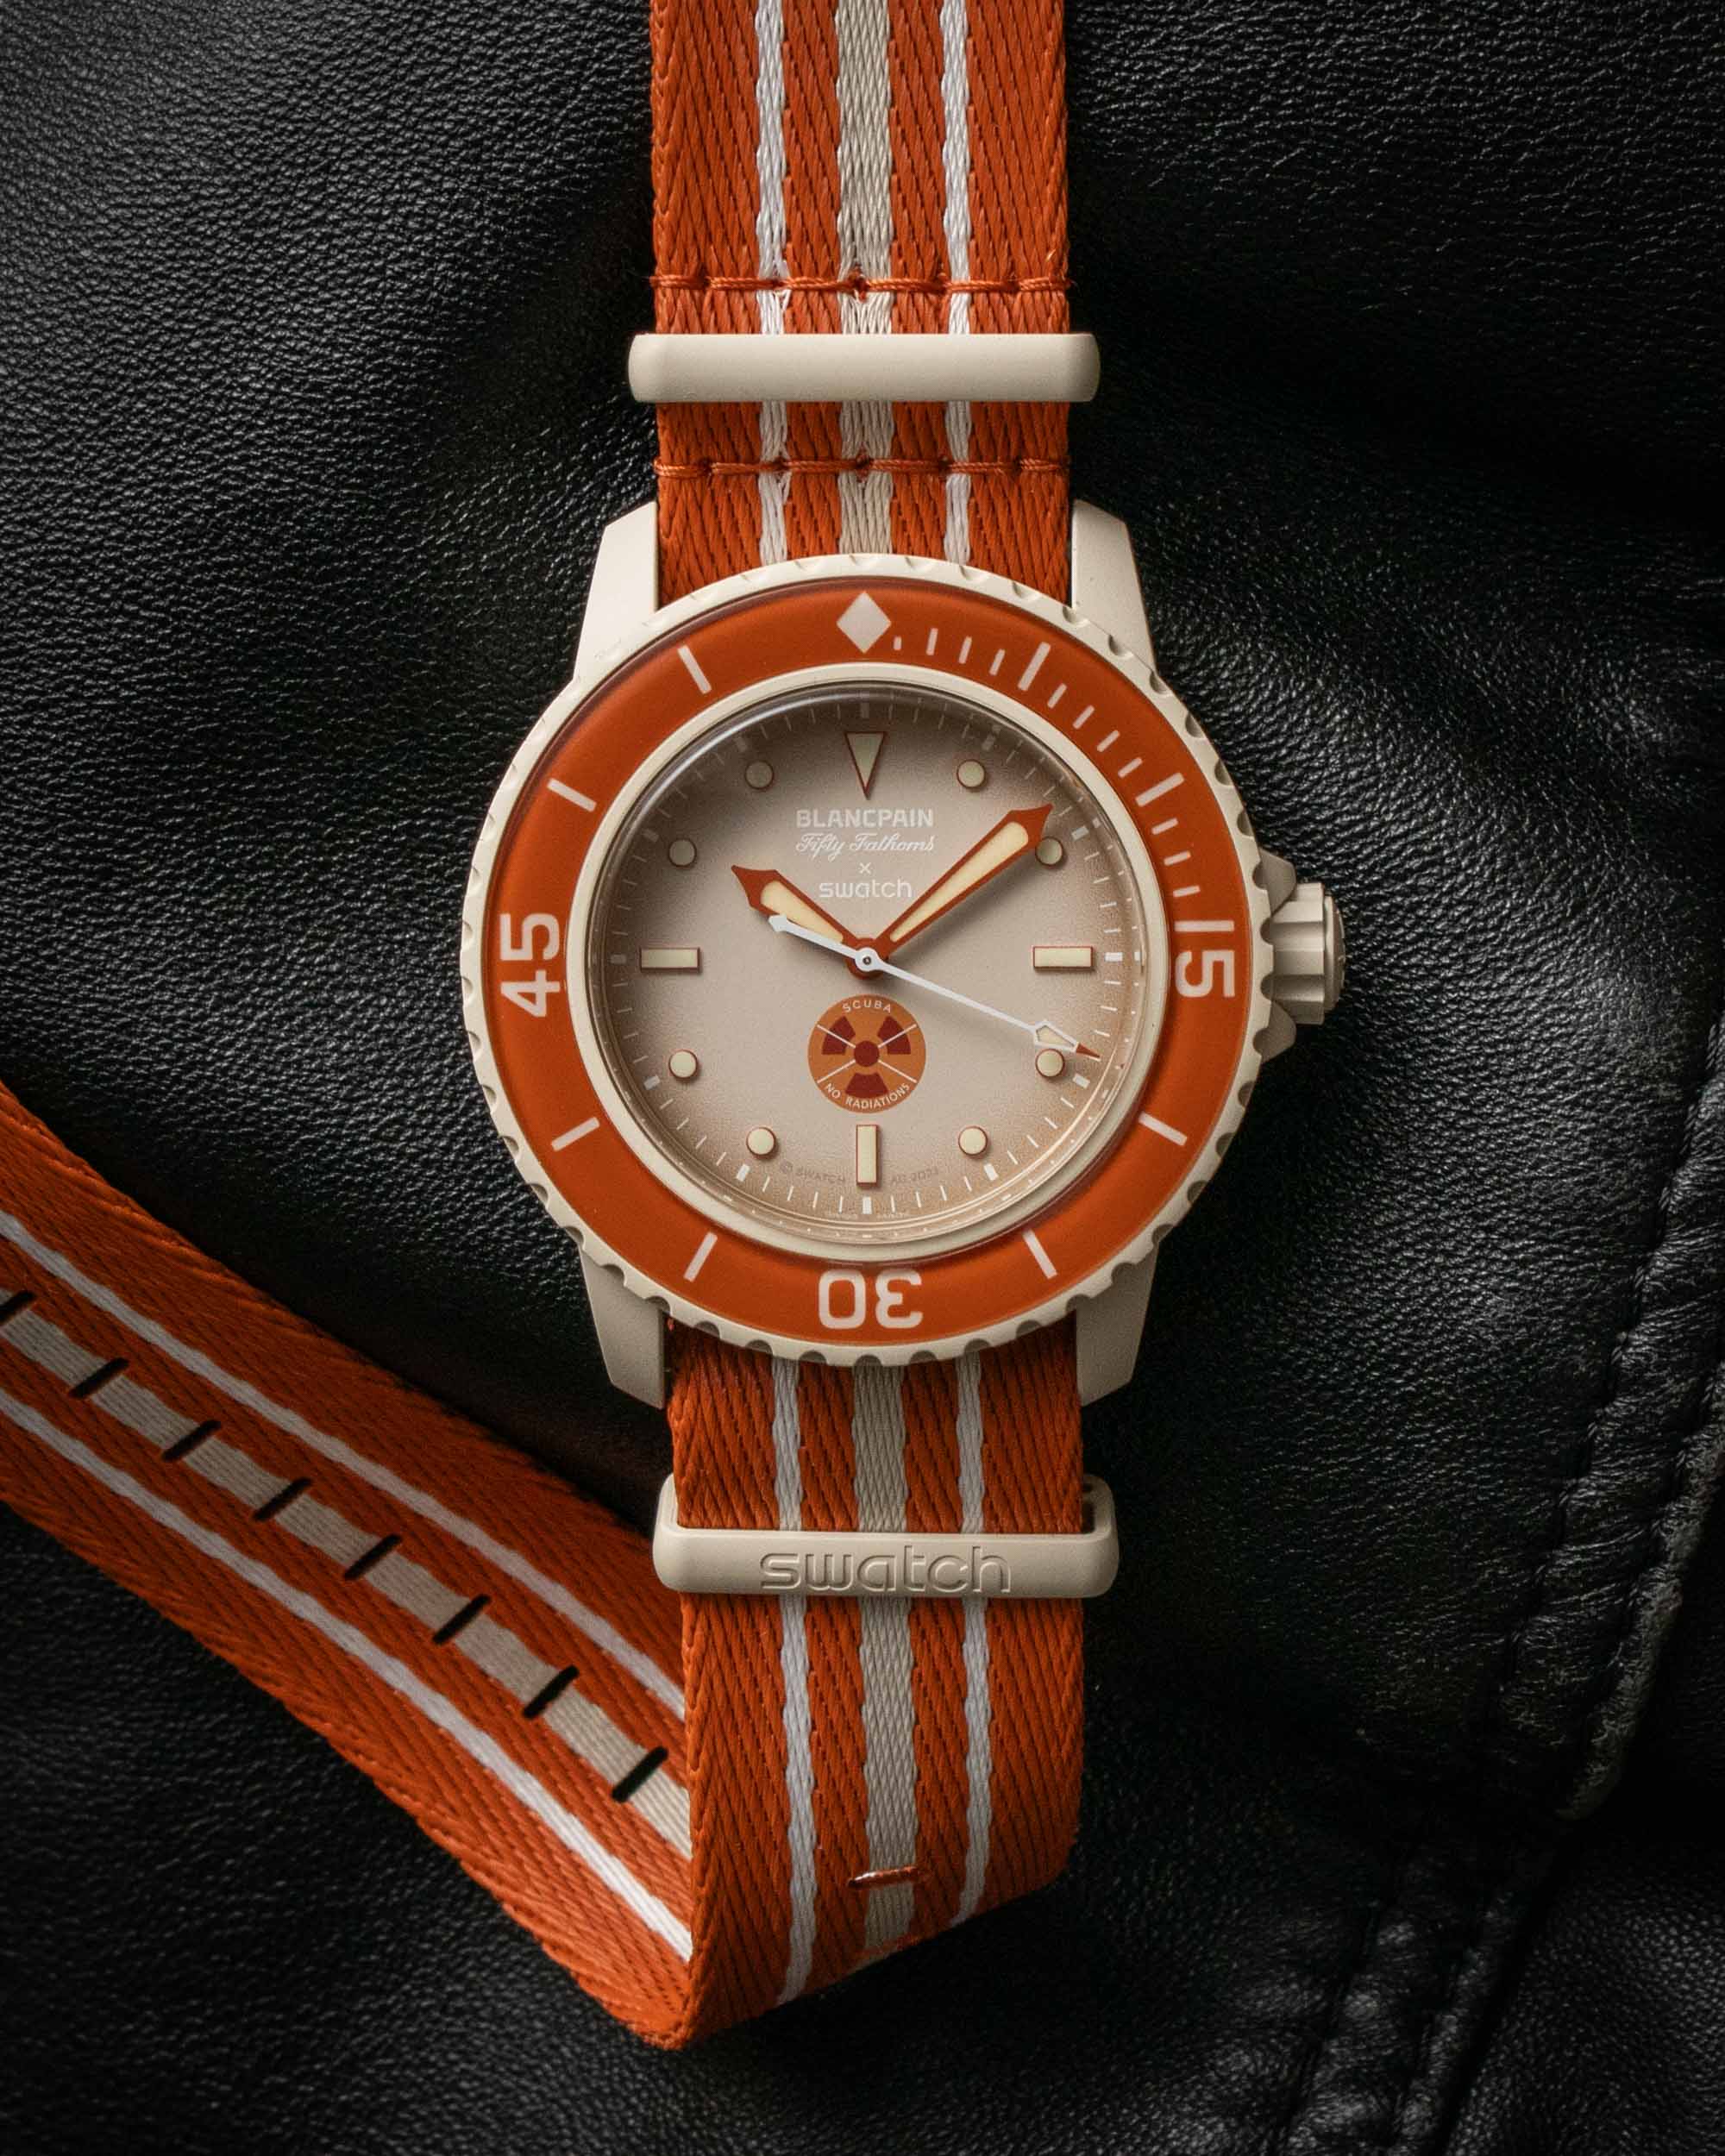 Искусство слияния миров: Обзор часов Blancpain X Swatch Scuba Fifty Fathoms Bioceramic с безупречным дизайном